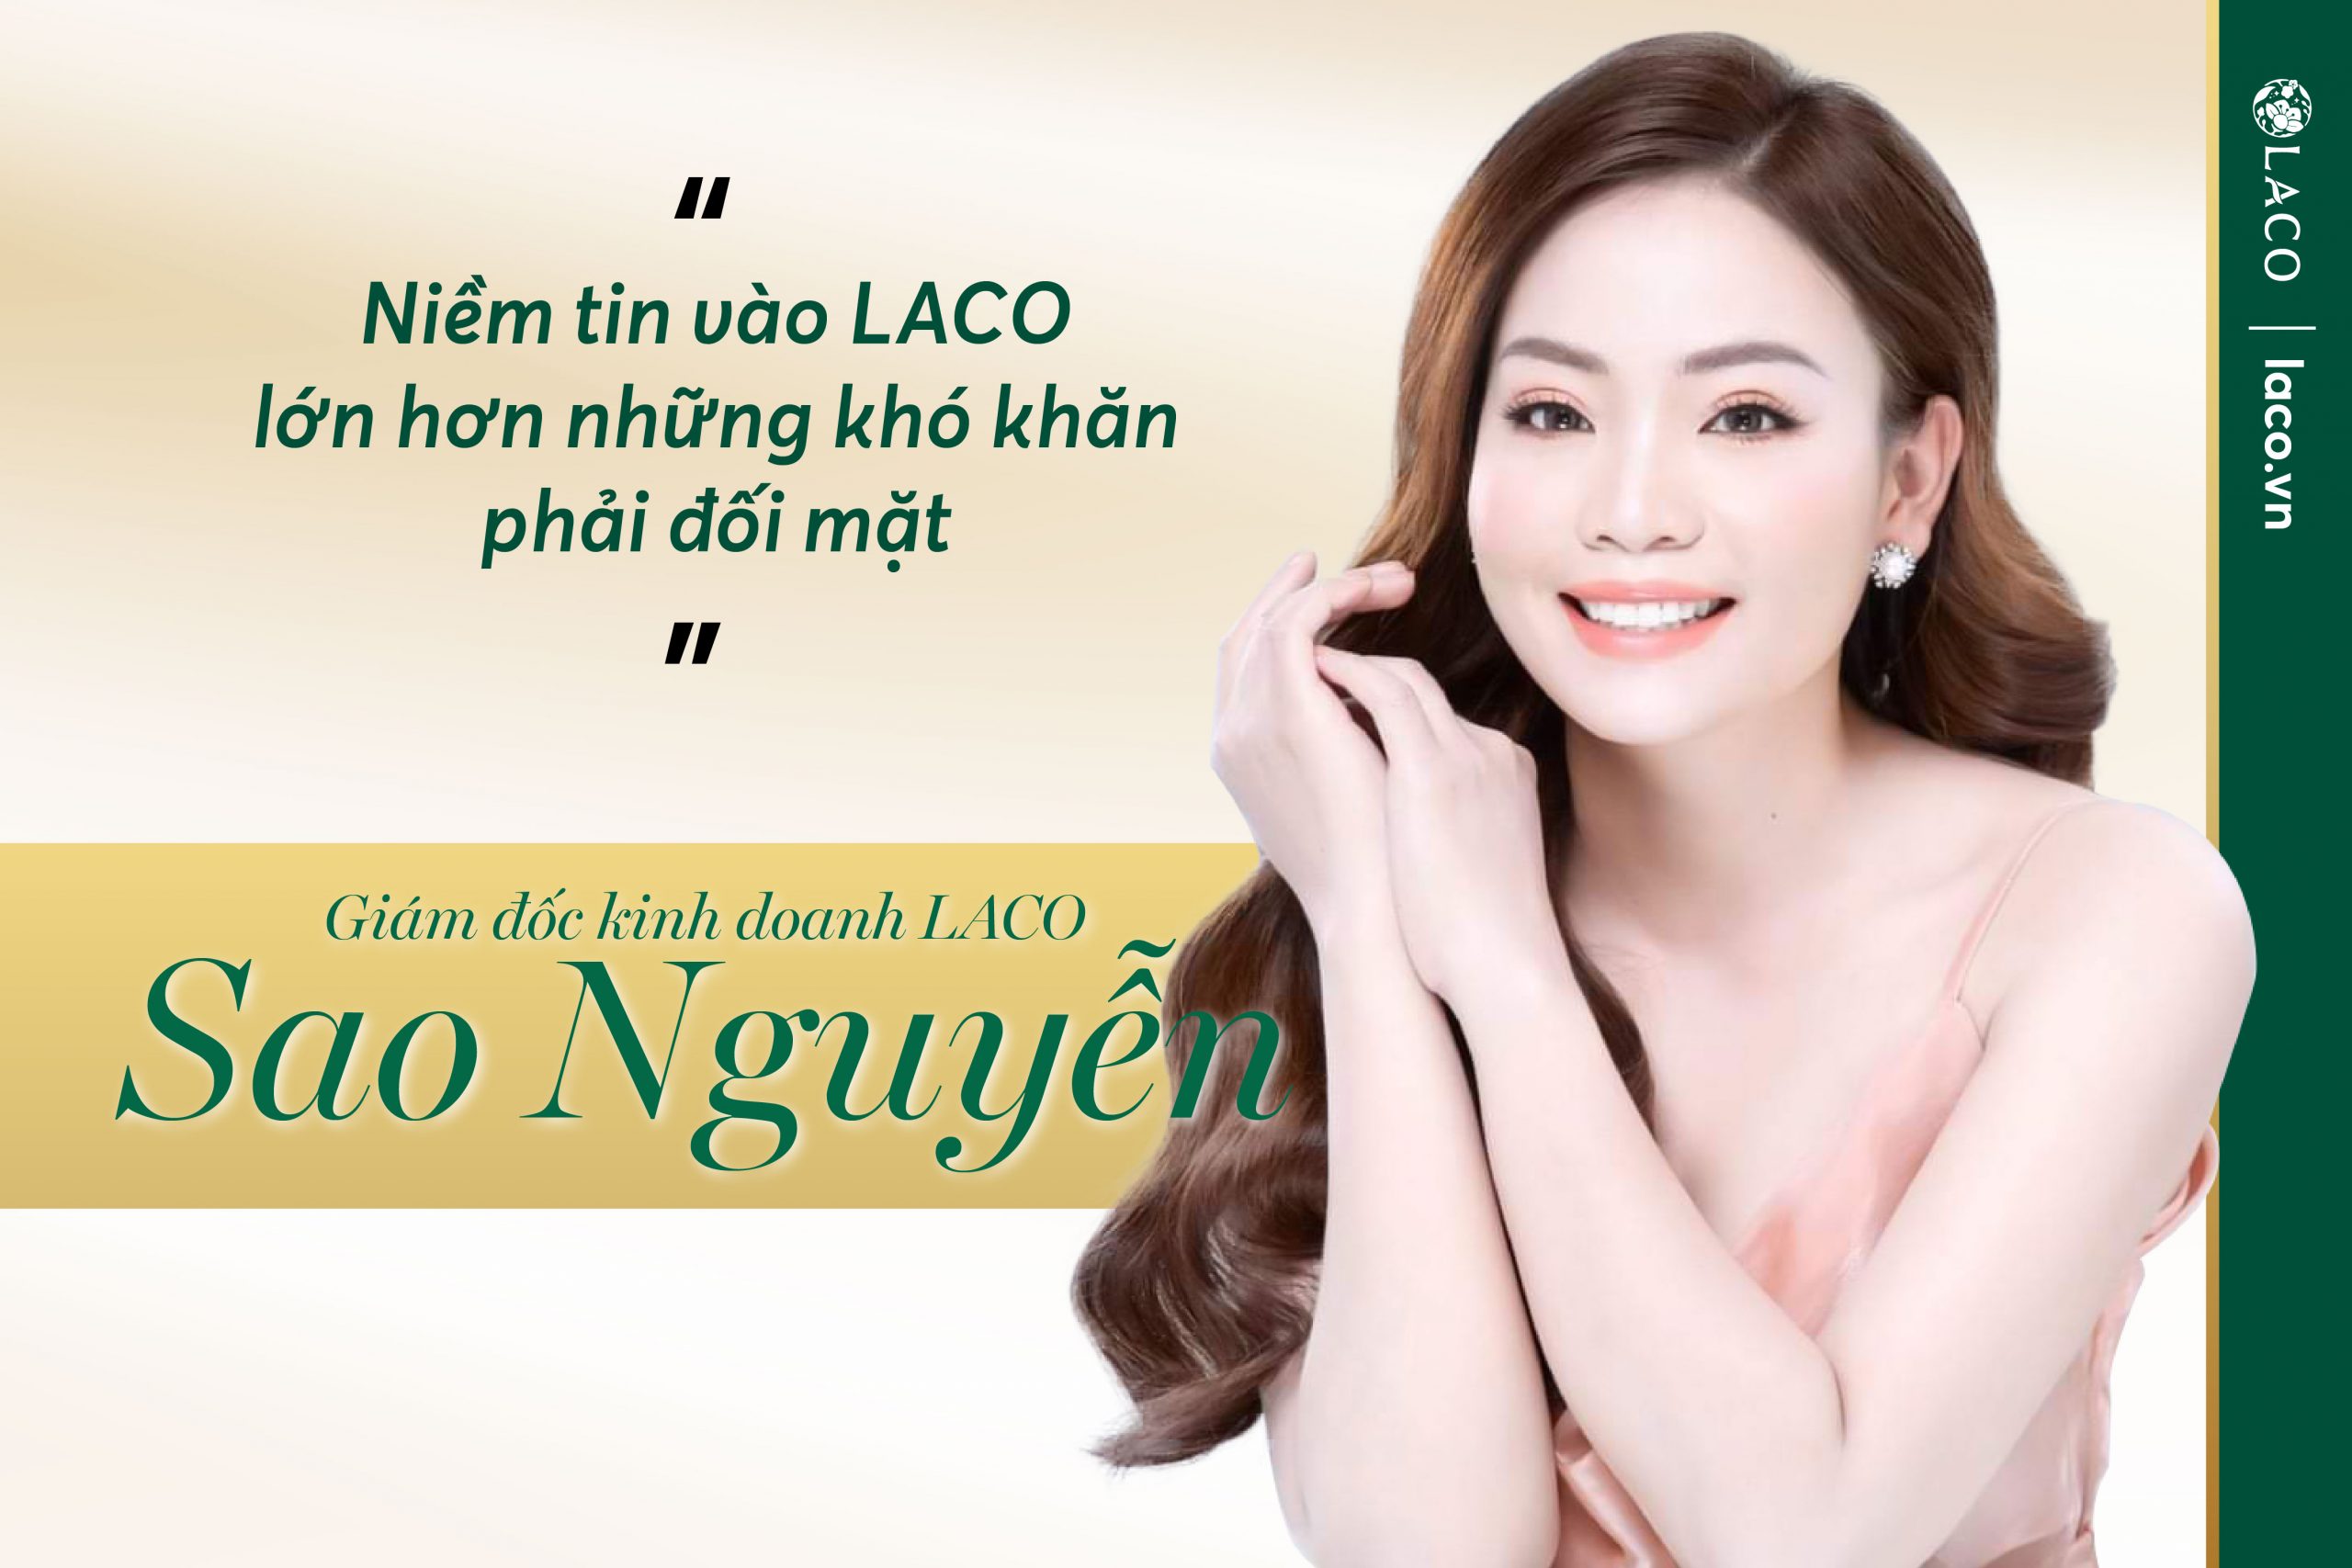 Giám dốc kinh doanh LACO Sao Nguyễn: Niềm tin vào LACO lớn hơn những khó khăn phải đối mặt